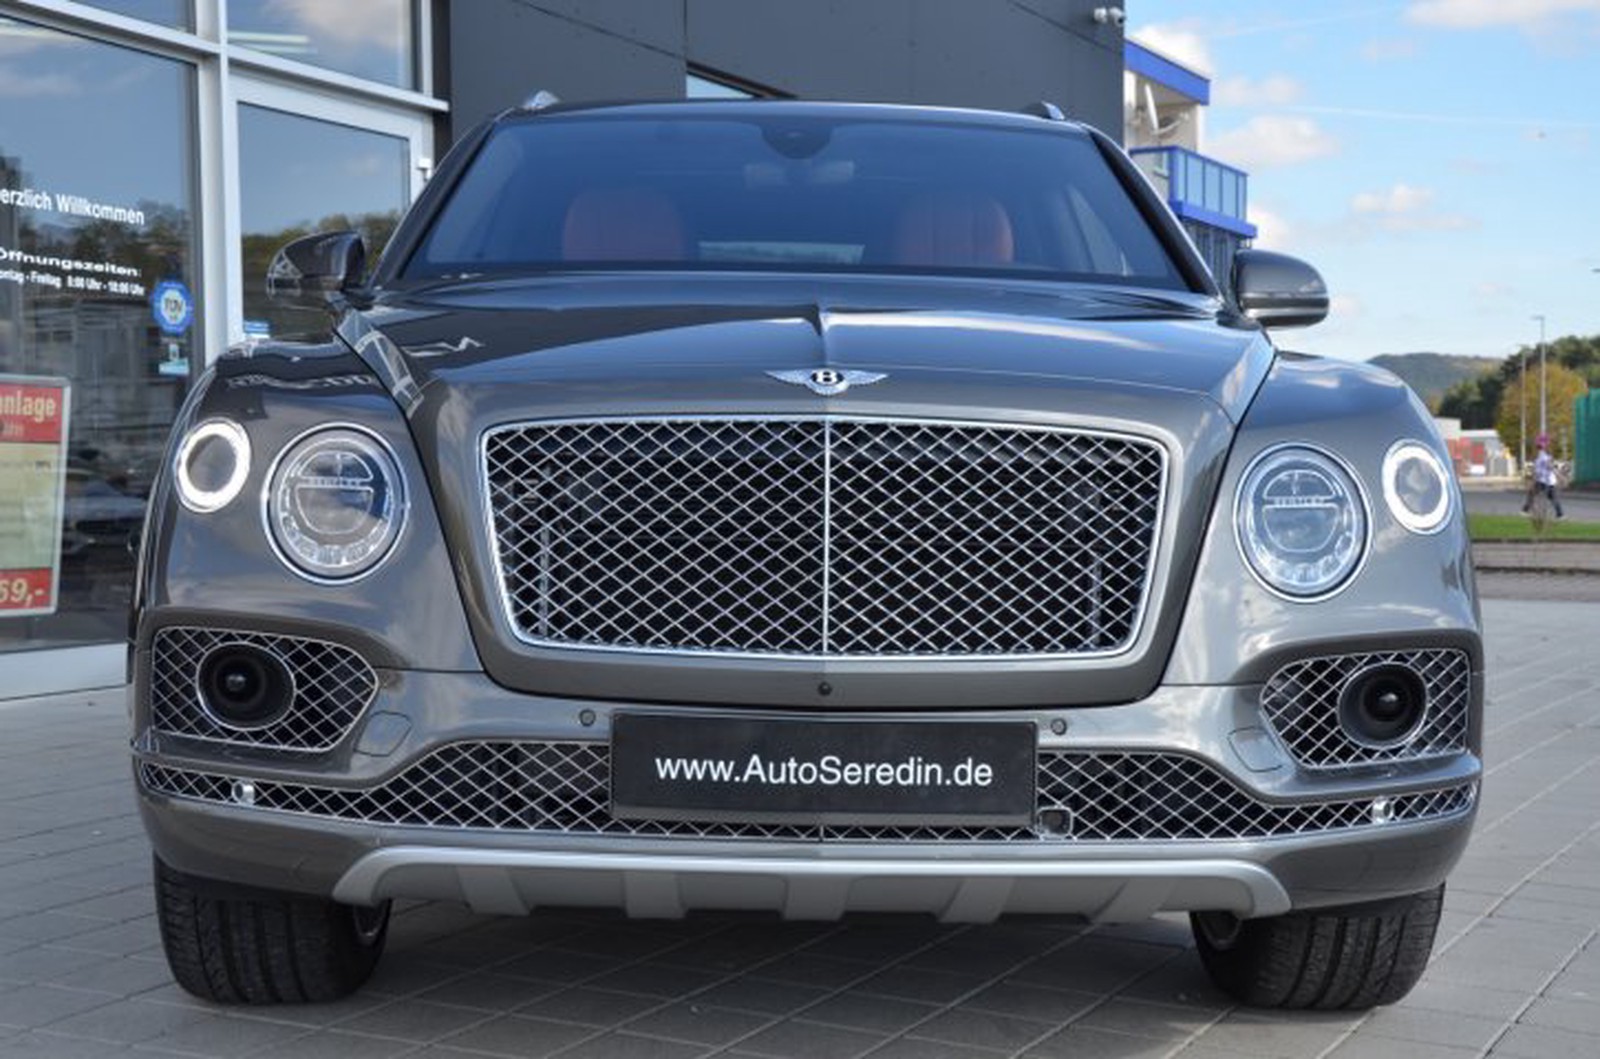 Bentley Bentayga Naim 4 Seats New Buy In Hechingen Bei Stuttgart Price Eur Int Nr L679 Sold